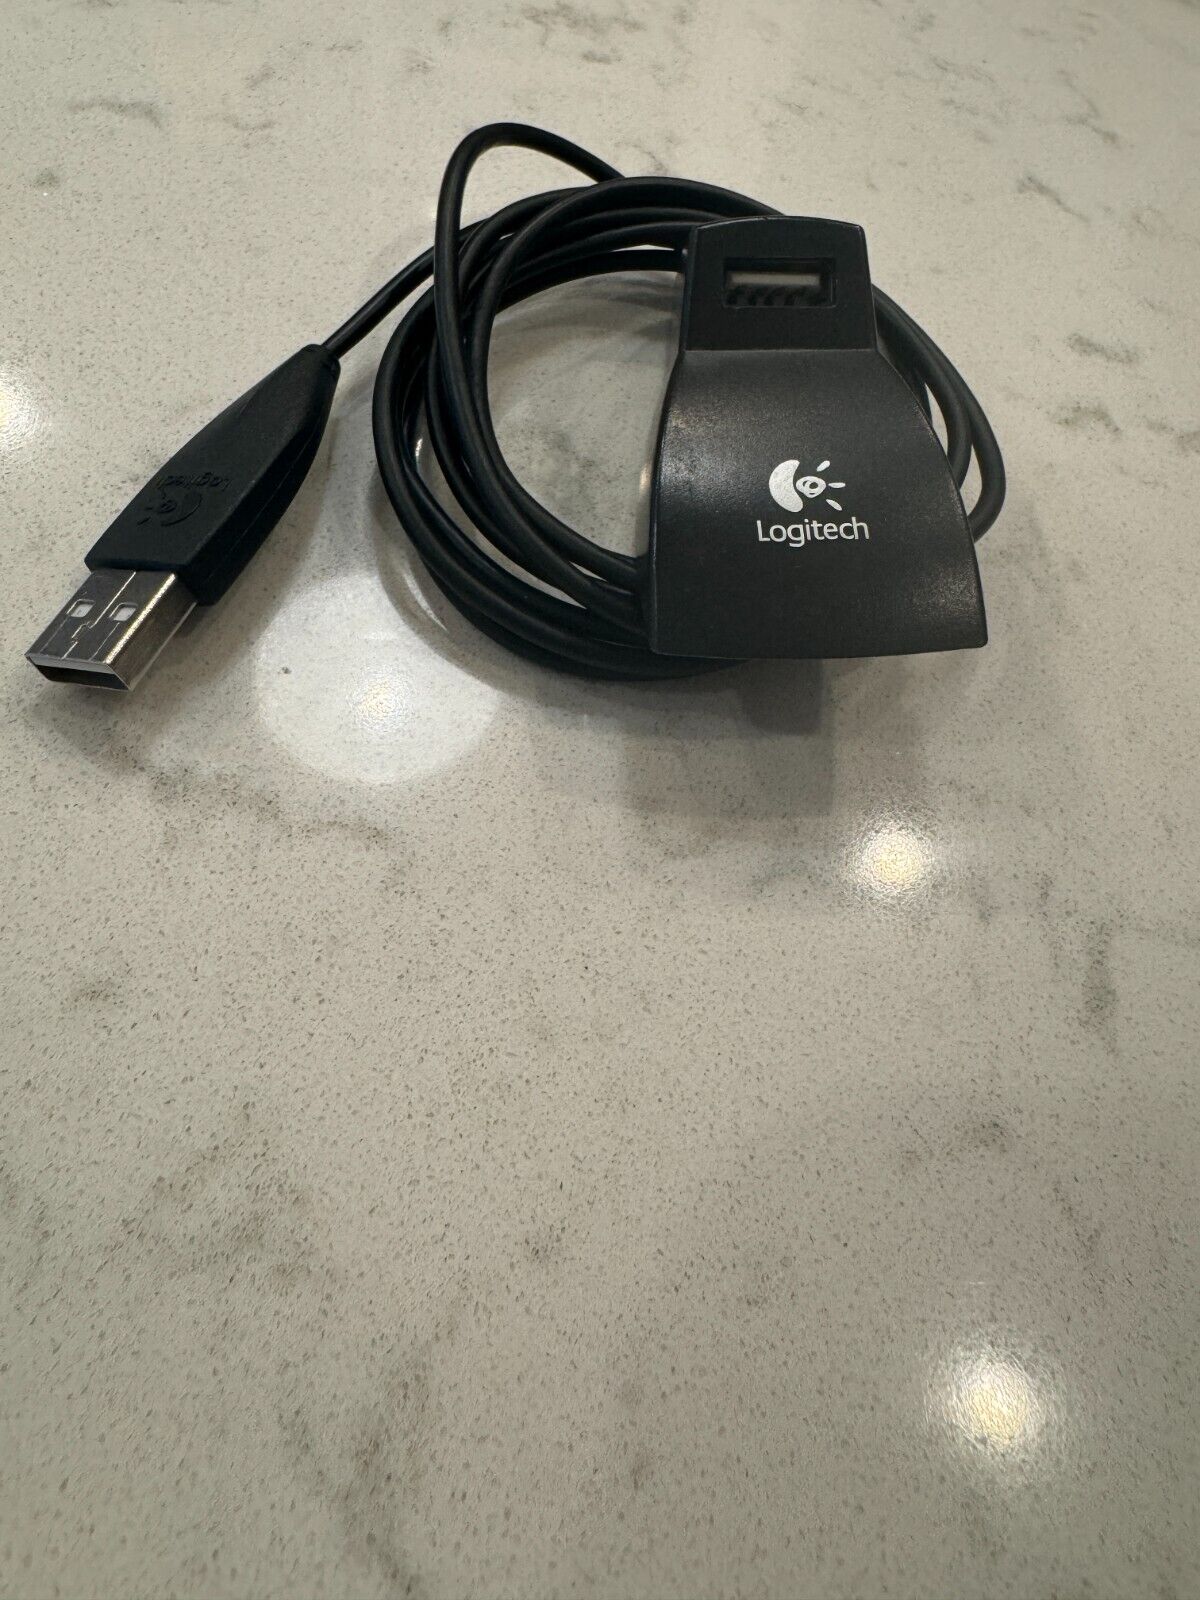 Logitech External USB Extender Stand Mouse Keyboard Webcam Headset Flashdrive